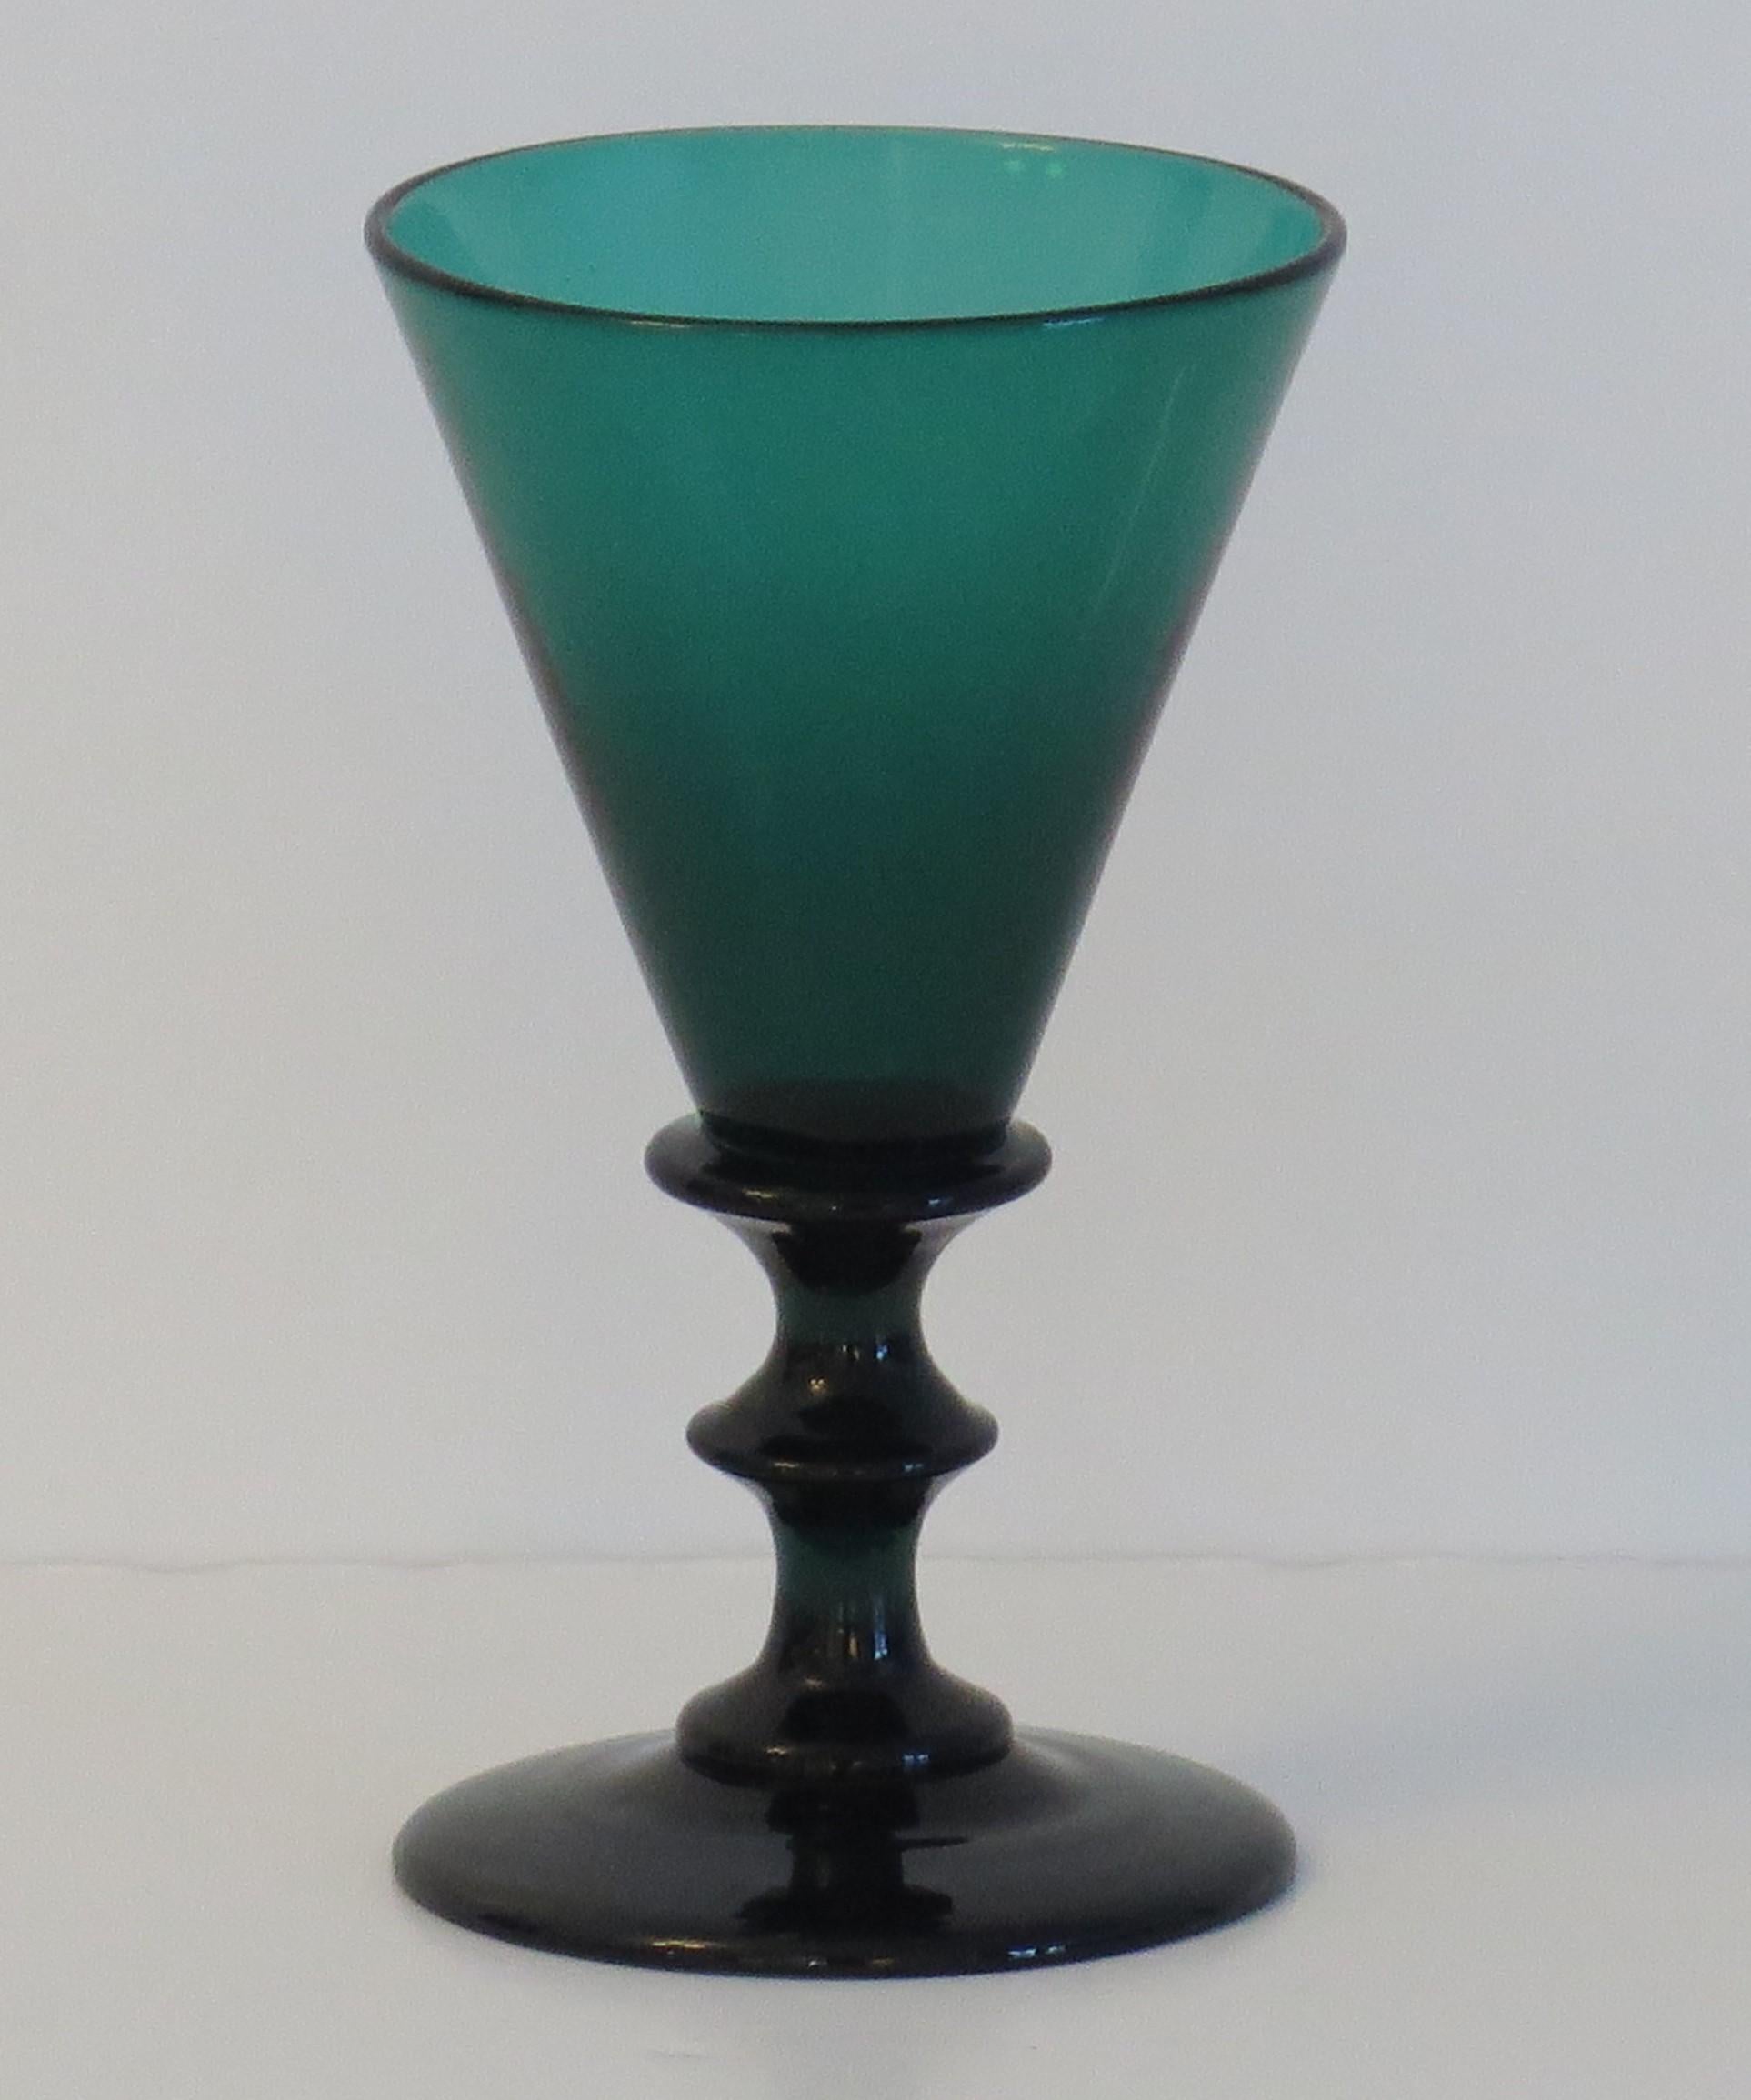 Dies ist ein hervorragendes Beispiel für ein englisches, mundgeblasenes, grünes Weintrinkglas aus Bristol aus dem frühen 19. Jahrhundert, das wir auf die George 111 Regency-Periode um 1815 datieren.

Dieses Glas hat eine elegante, konische Schale